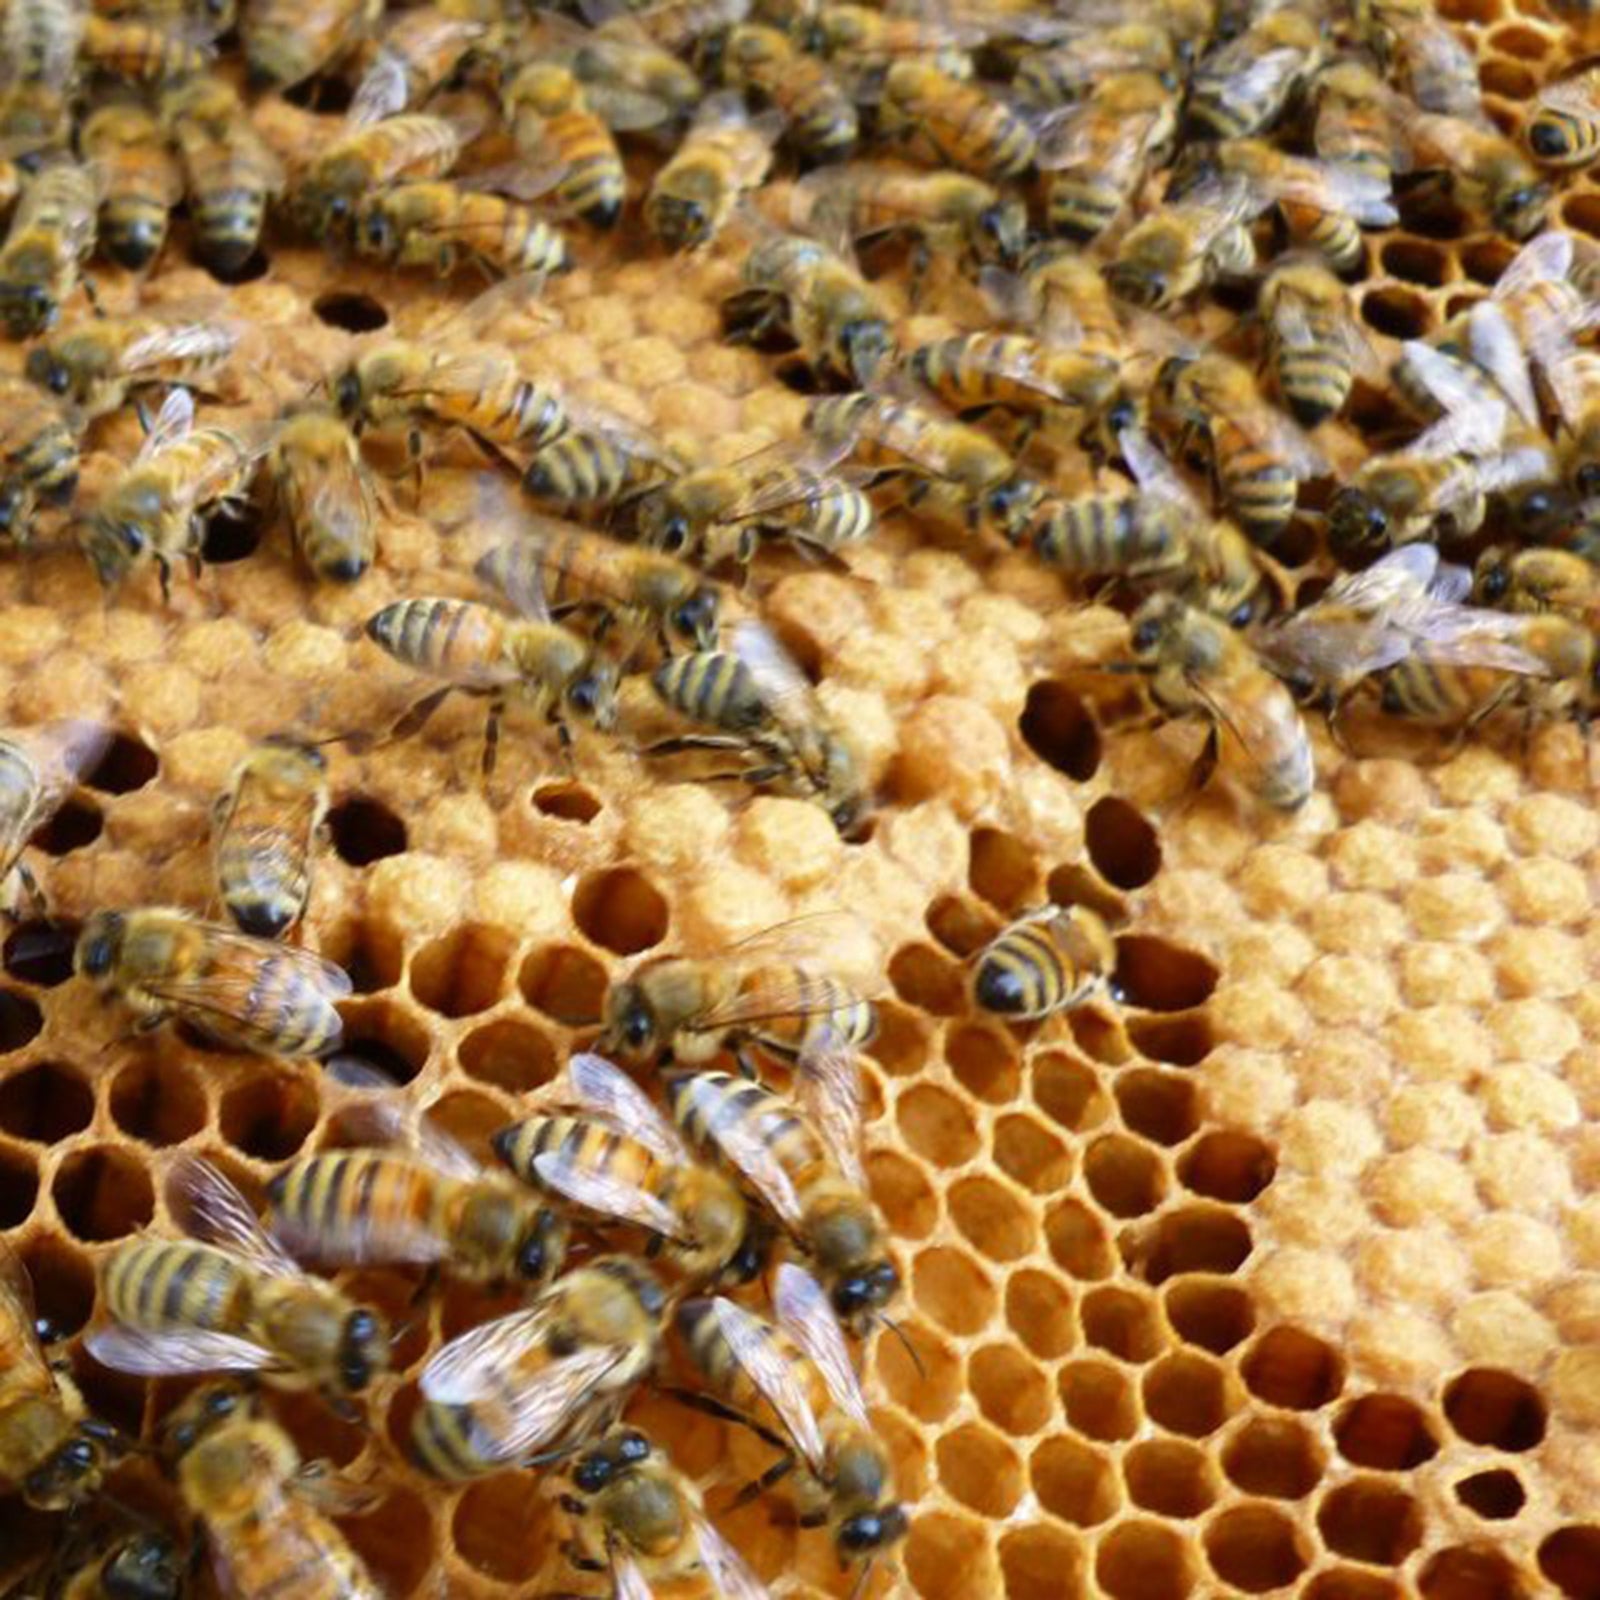 Honey Bees in Winter